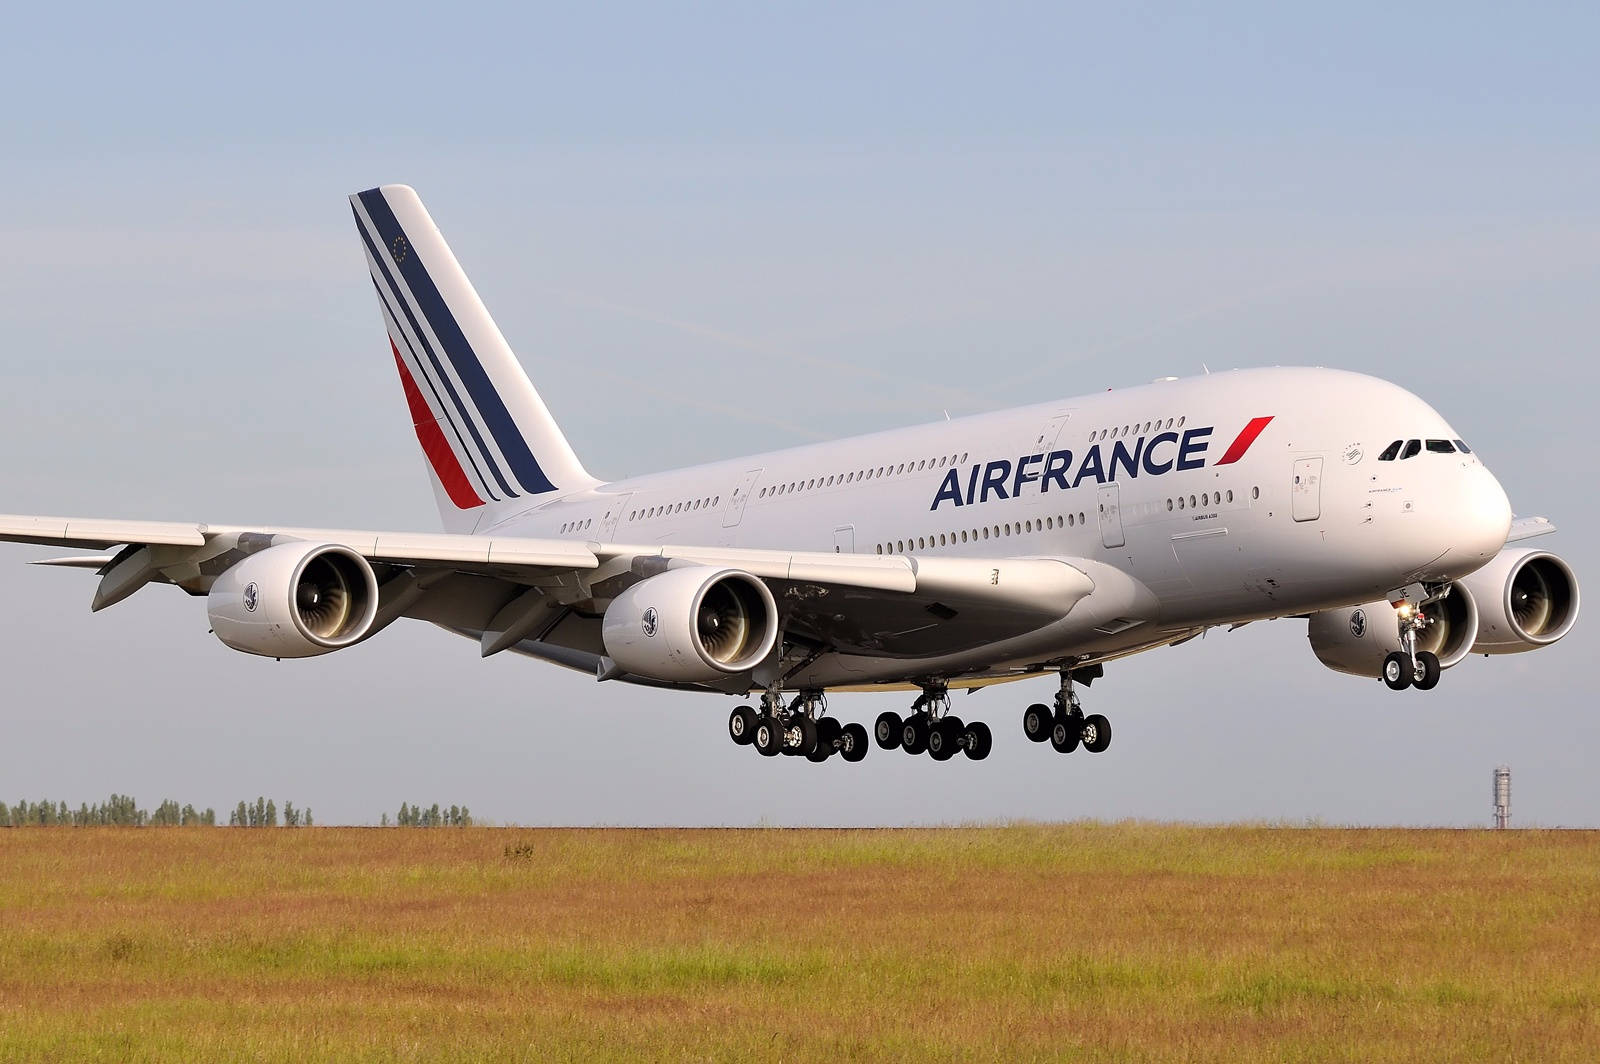 Air France Air Carrier Airbus A380 Passenger Plane Wallpaper